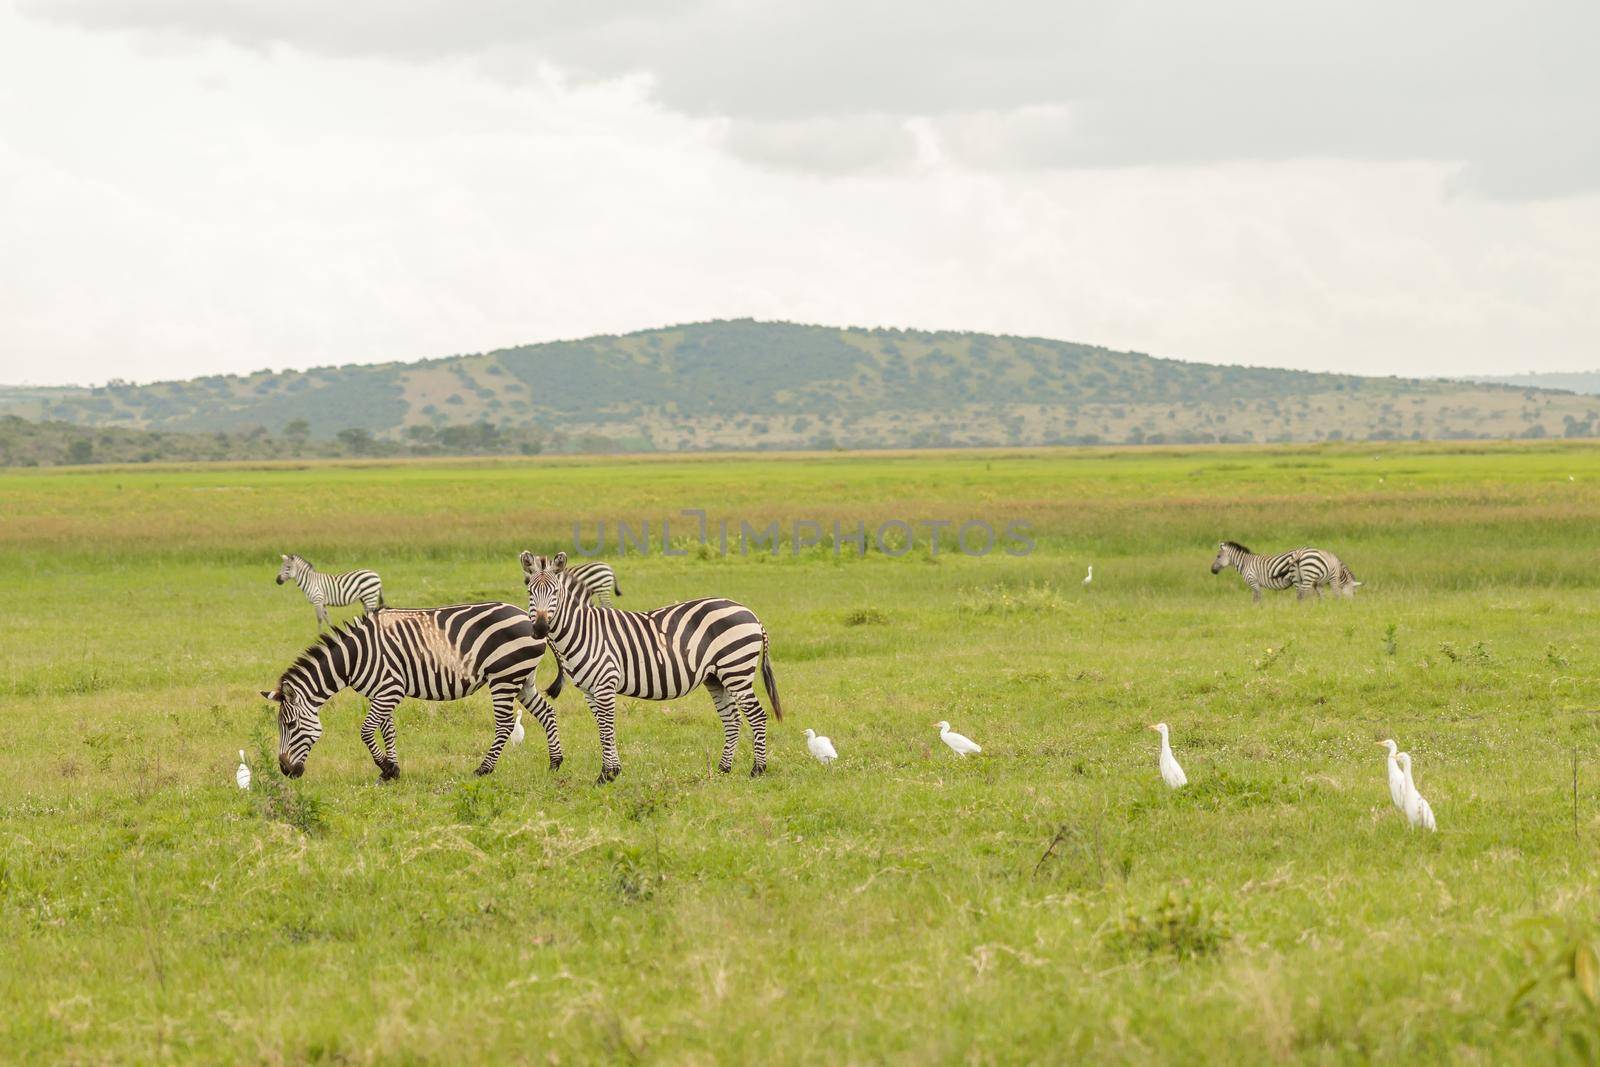 Herd of zebras grazing in a meadow with birds nearby by Yaroslav_astakhov